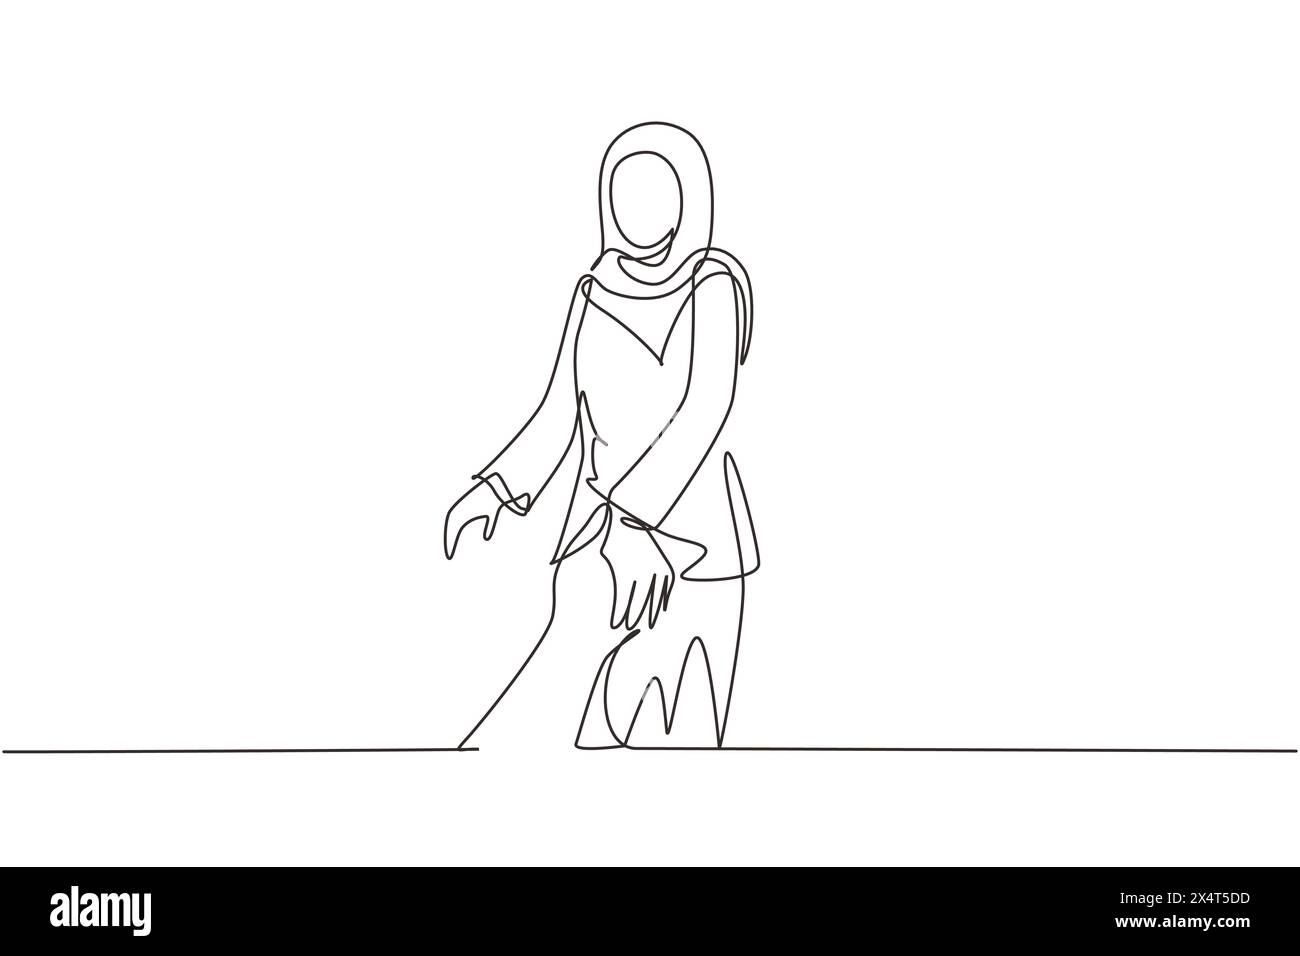 Una linea continua che attira una donna araba che cammina per una romantica vacanza di luna di miele, tenendo la mano del marito che la segue, vista da dietro. Colpo di stato Illustrazione Vettoriale